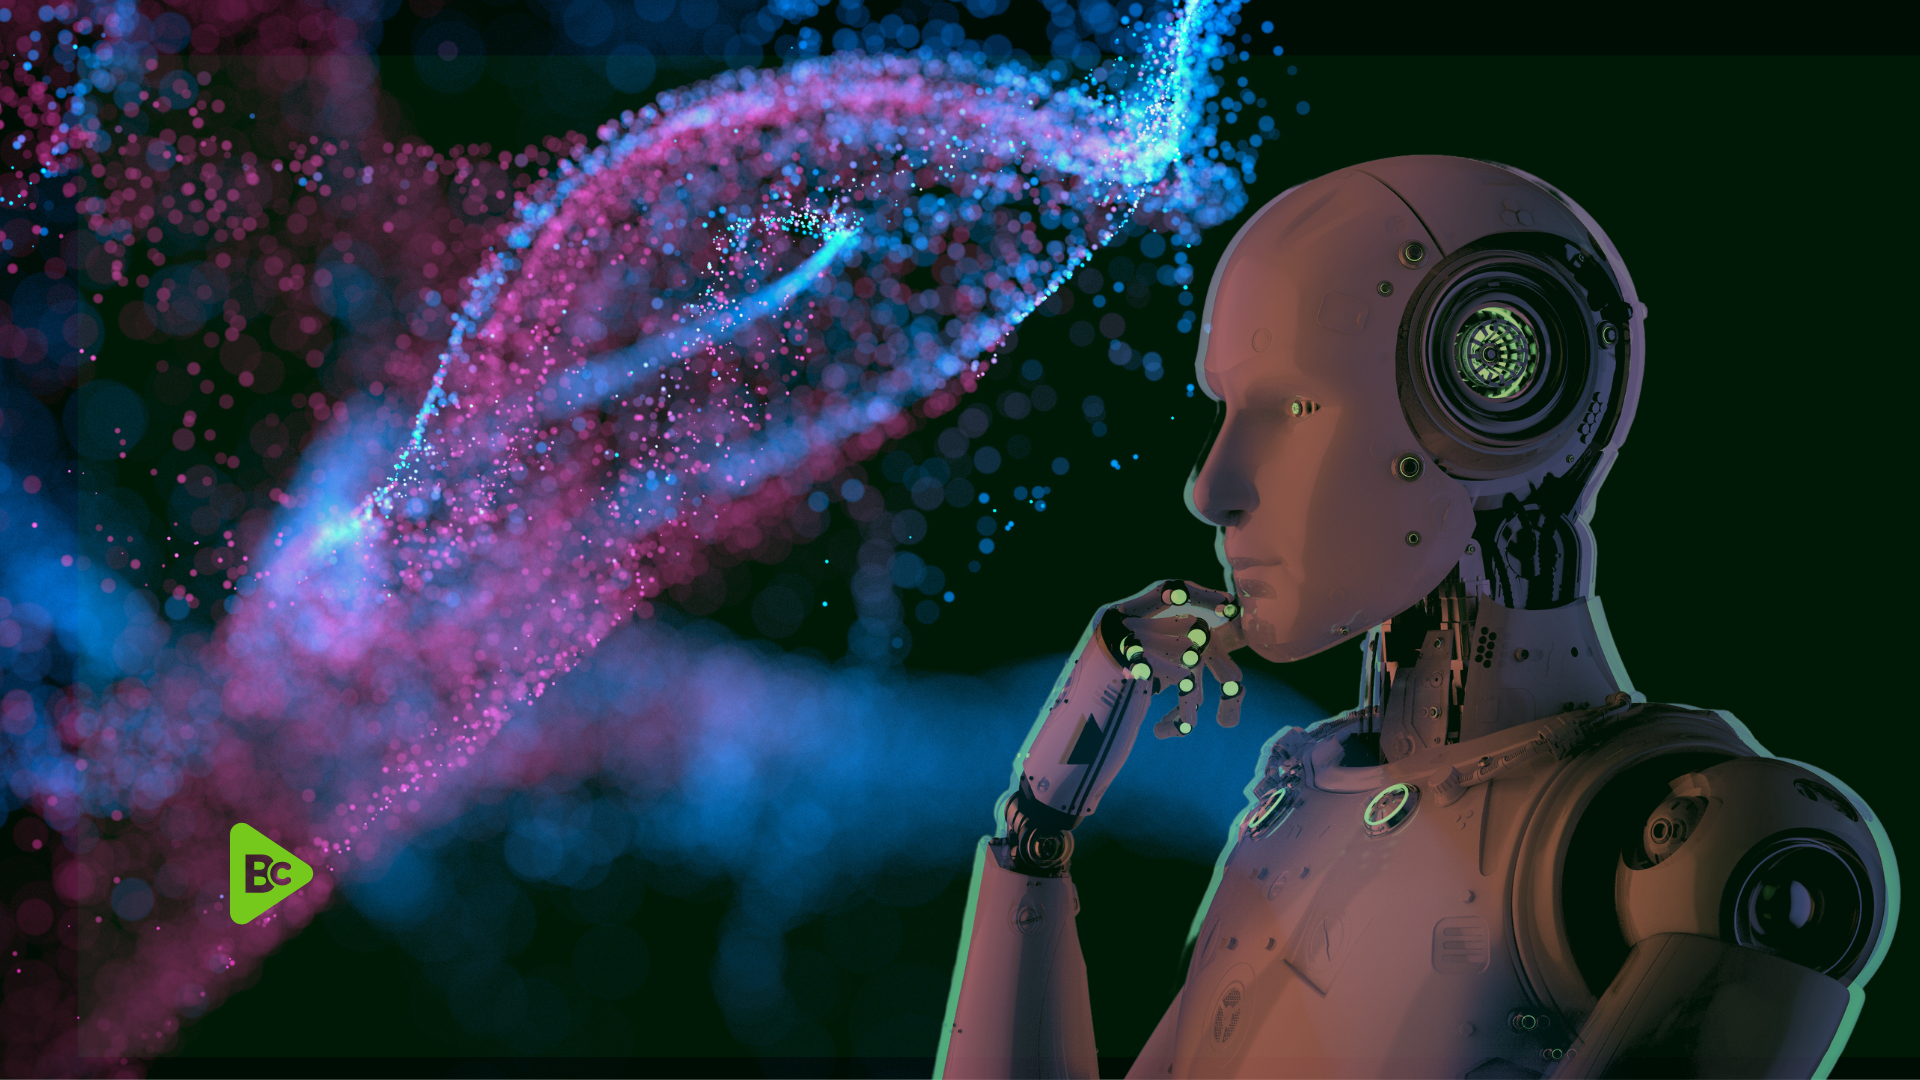 Intelligenza Artificiale rivoluzione aziendale, logo Business Changers, robot con mano sul mento, sfondo astratto, colore